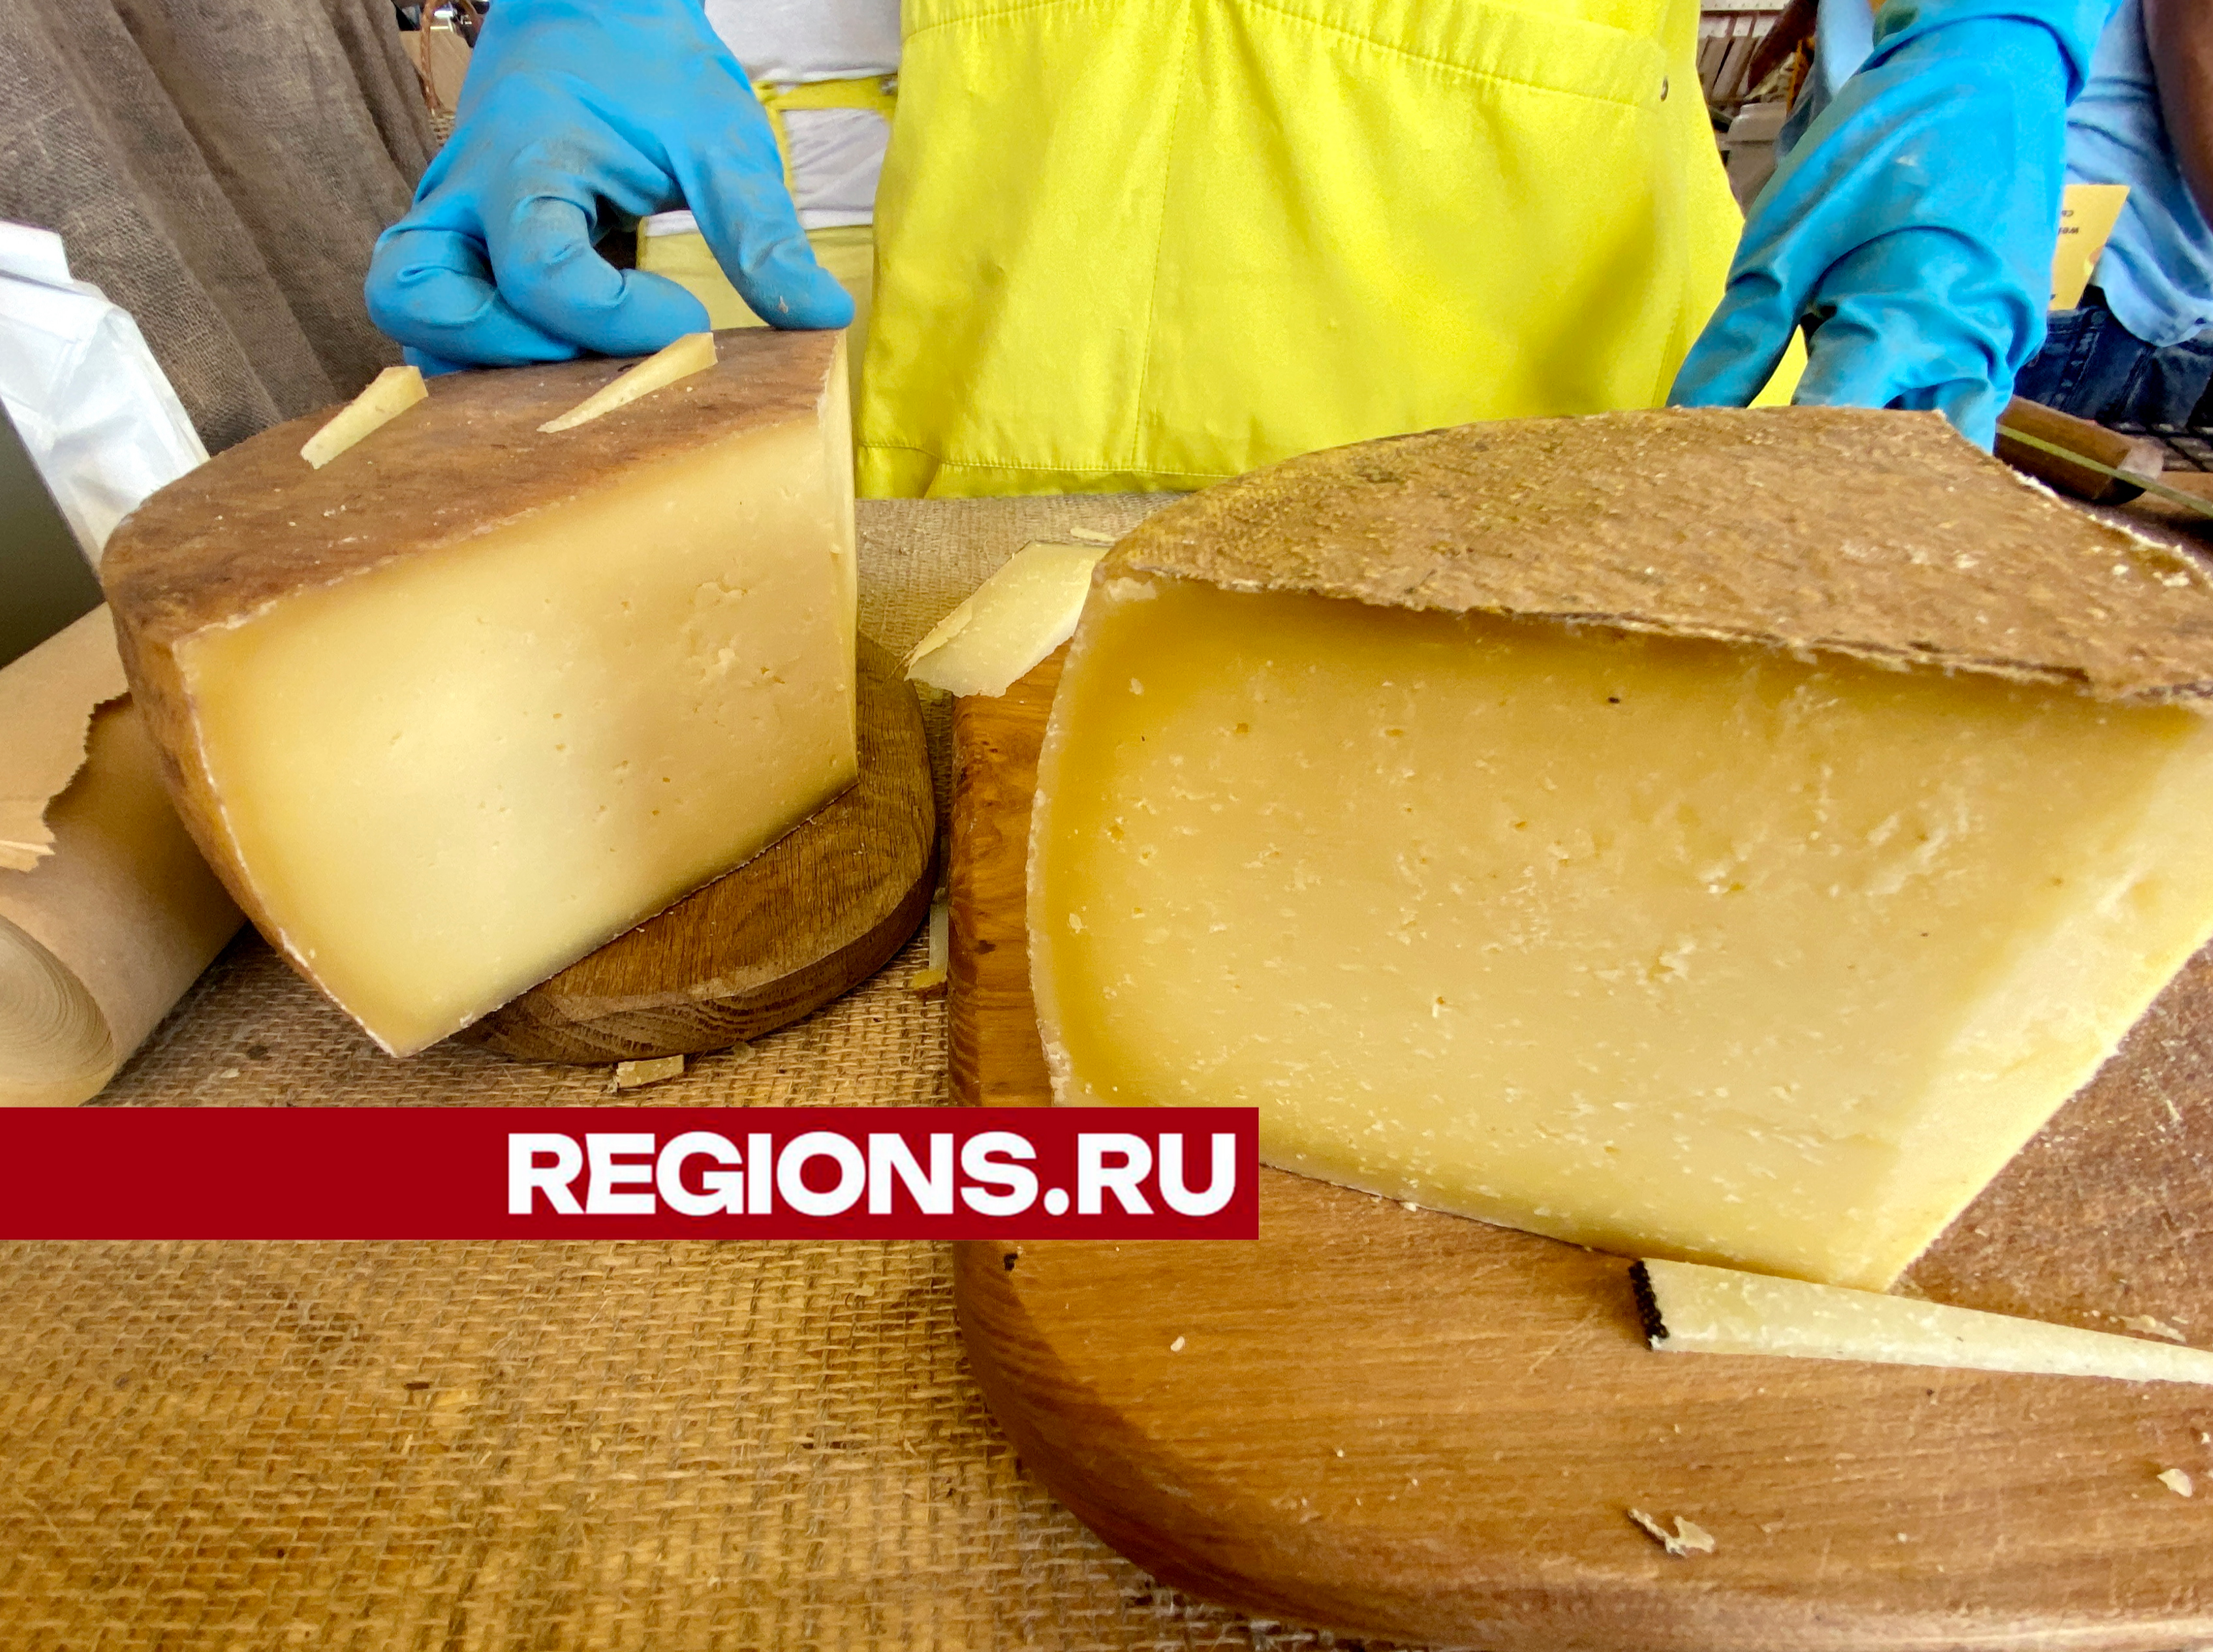 Ногинск нанесен на «сырную карту» России в числе шести регионов с лучшими сырами